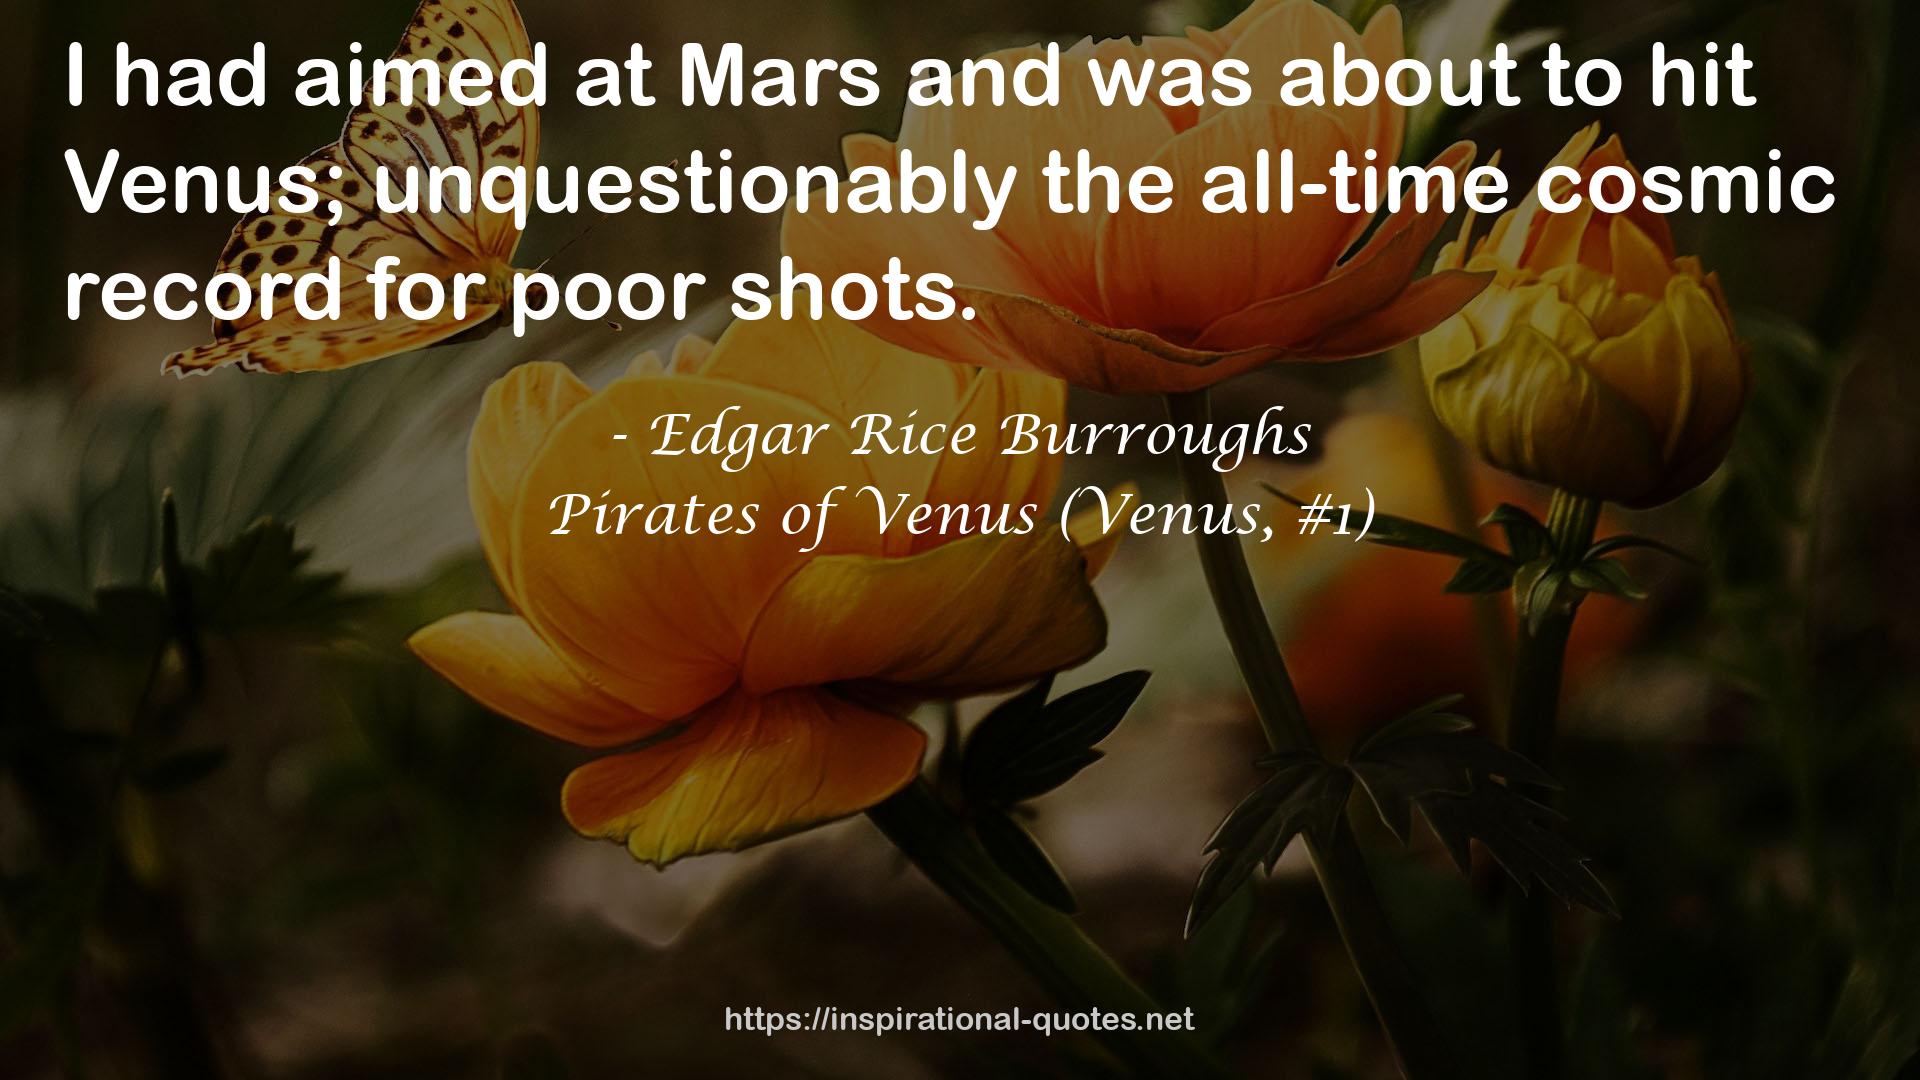 Pirates of Venus (Venus, #1) QUOTES